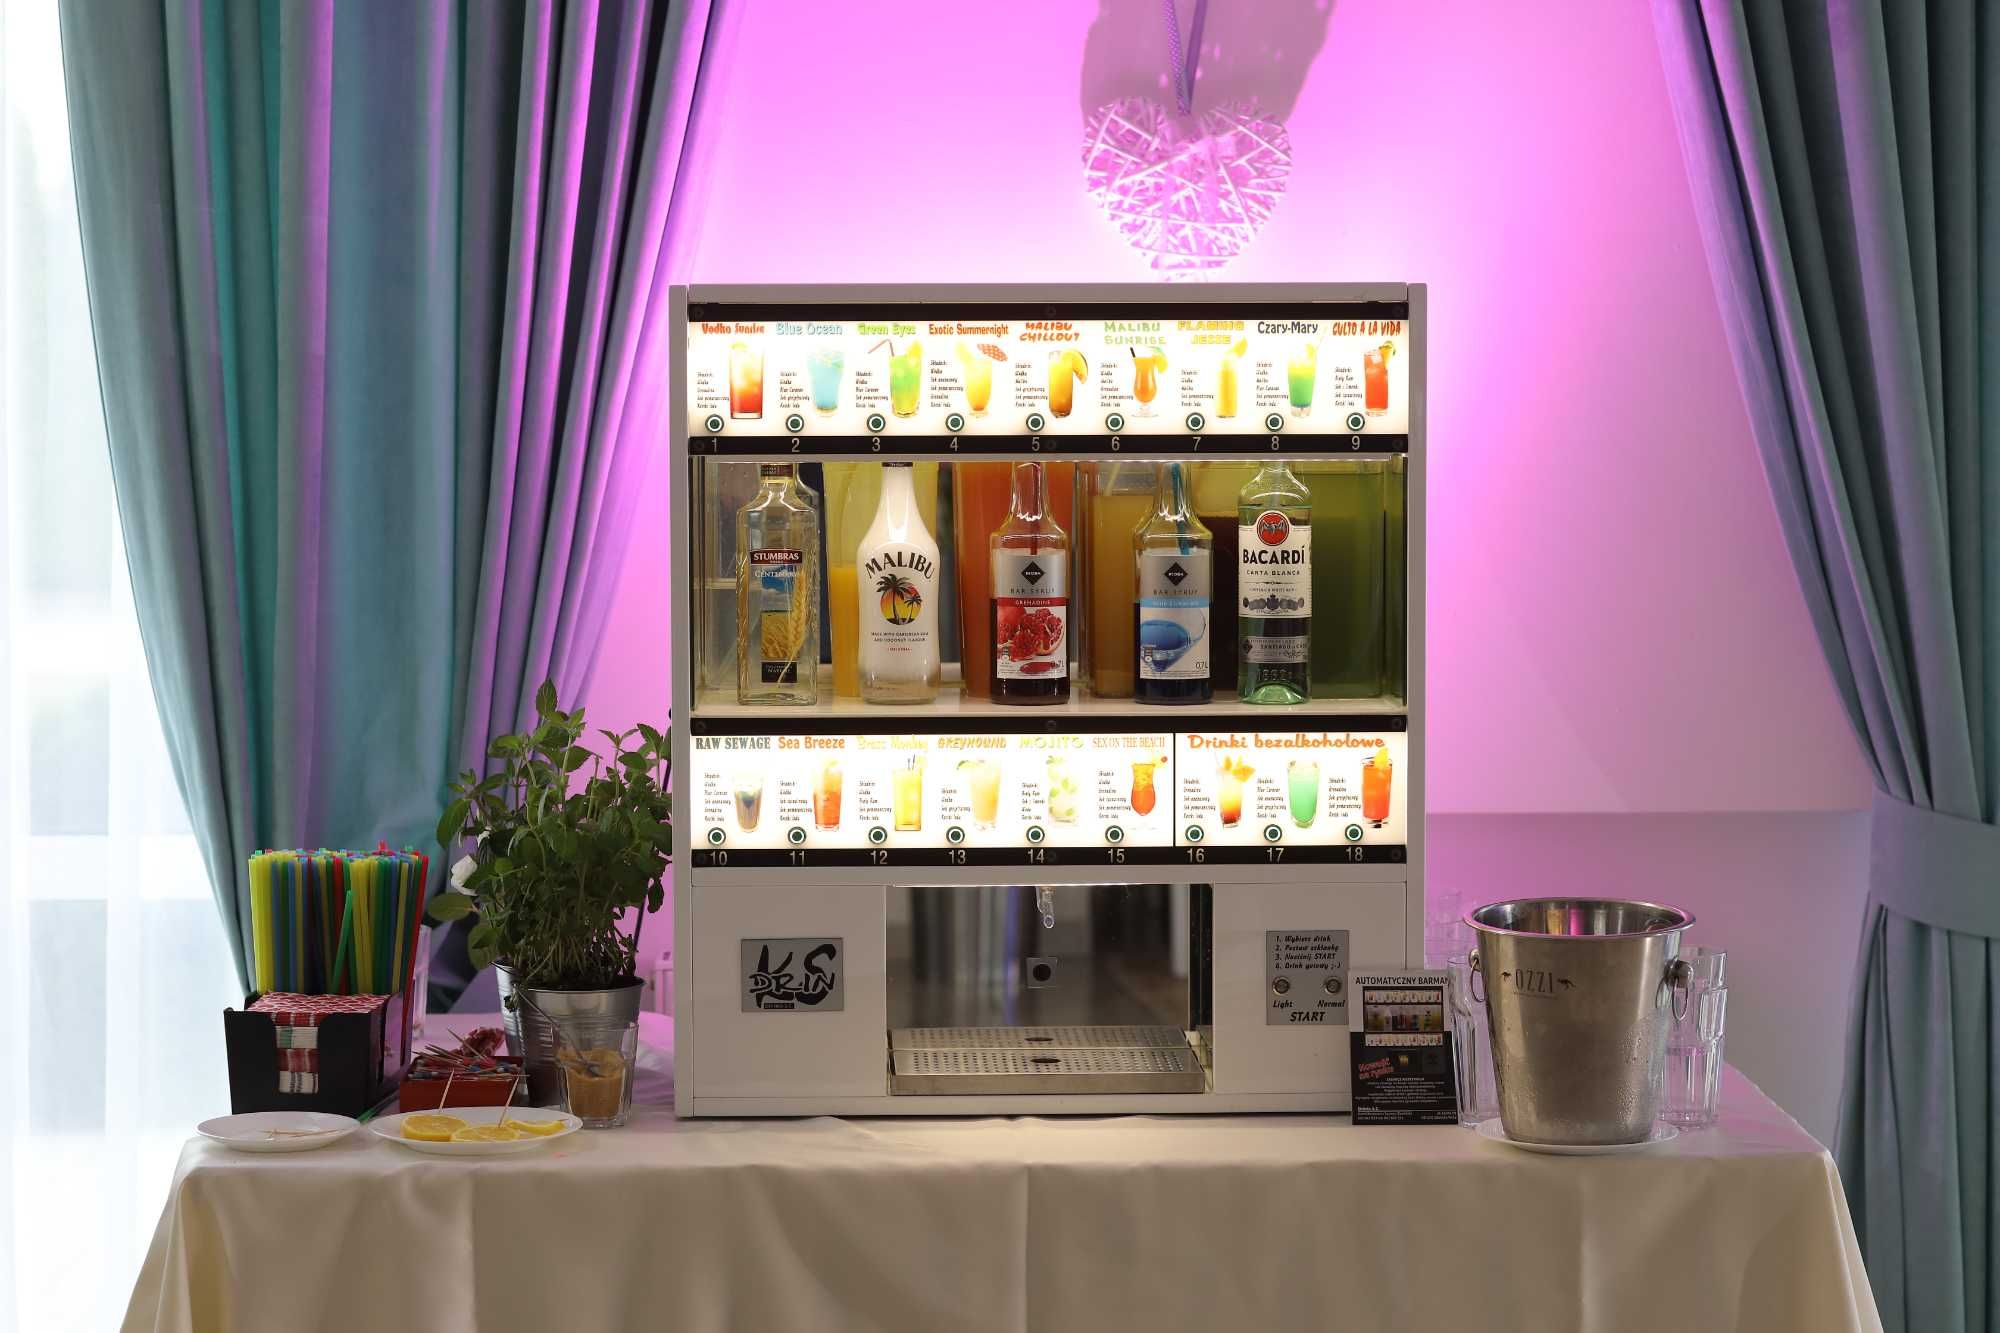 Automatyczny Barman "Drinks" Producent - Sprzedaż nowych urządzeń